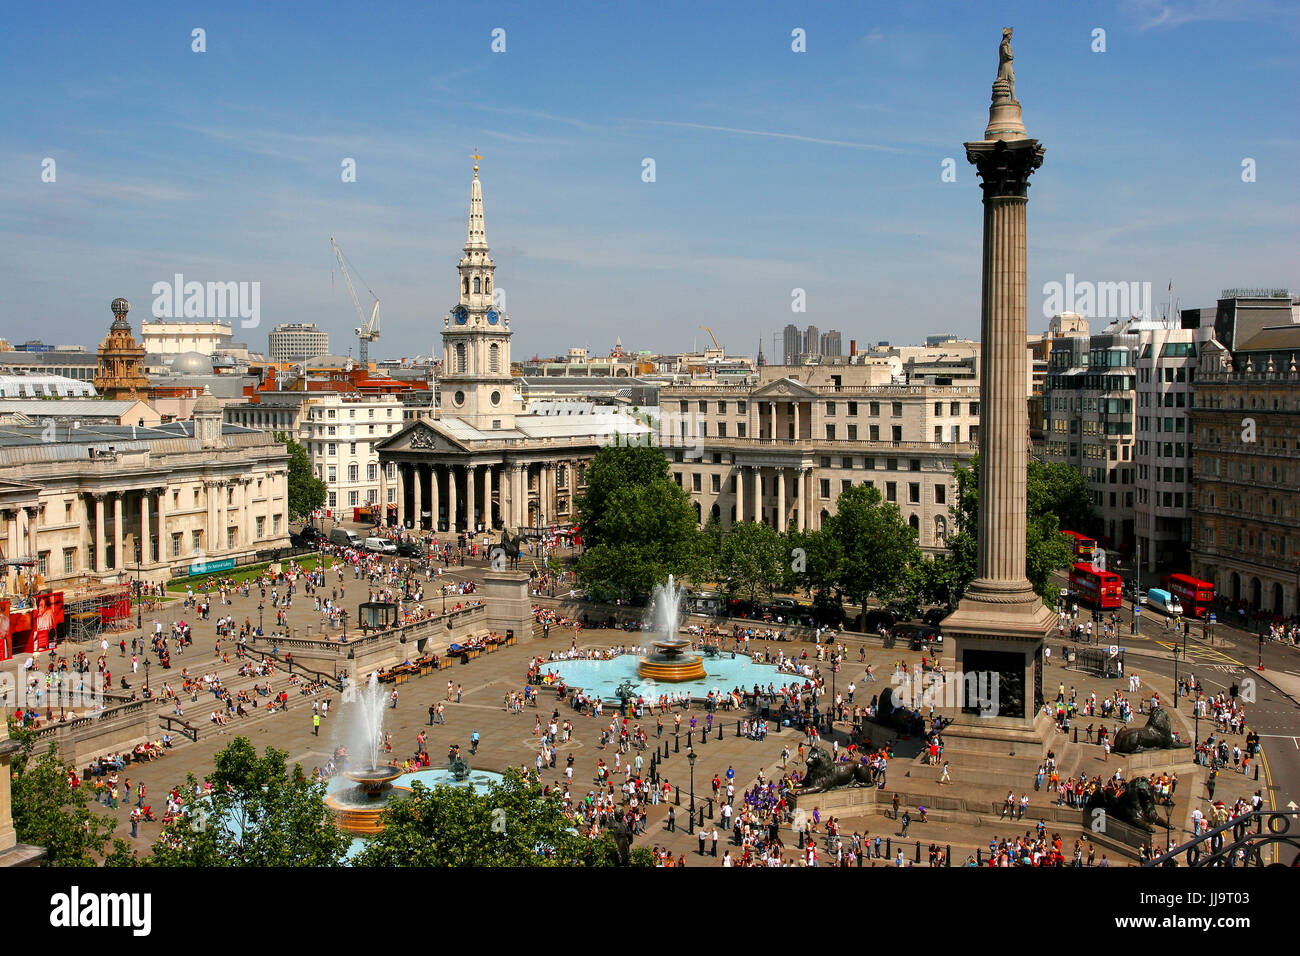 Luftaufnahme des Trafalgar Square mit Spalte Nelsons Denkmal und Brunnen, London, England, UK Stockfoto